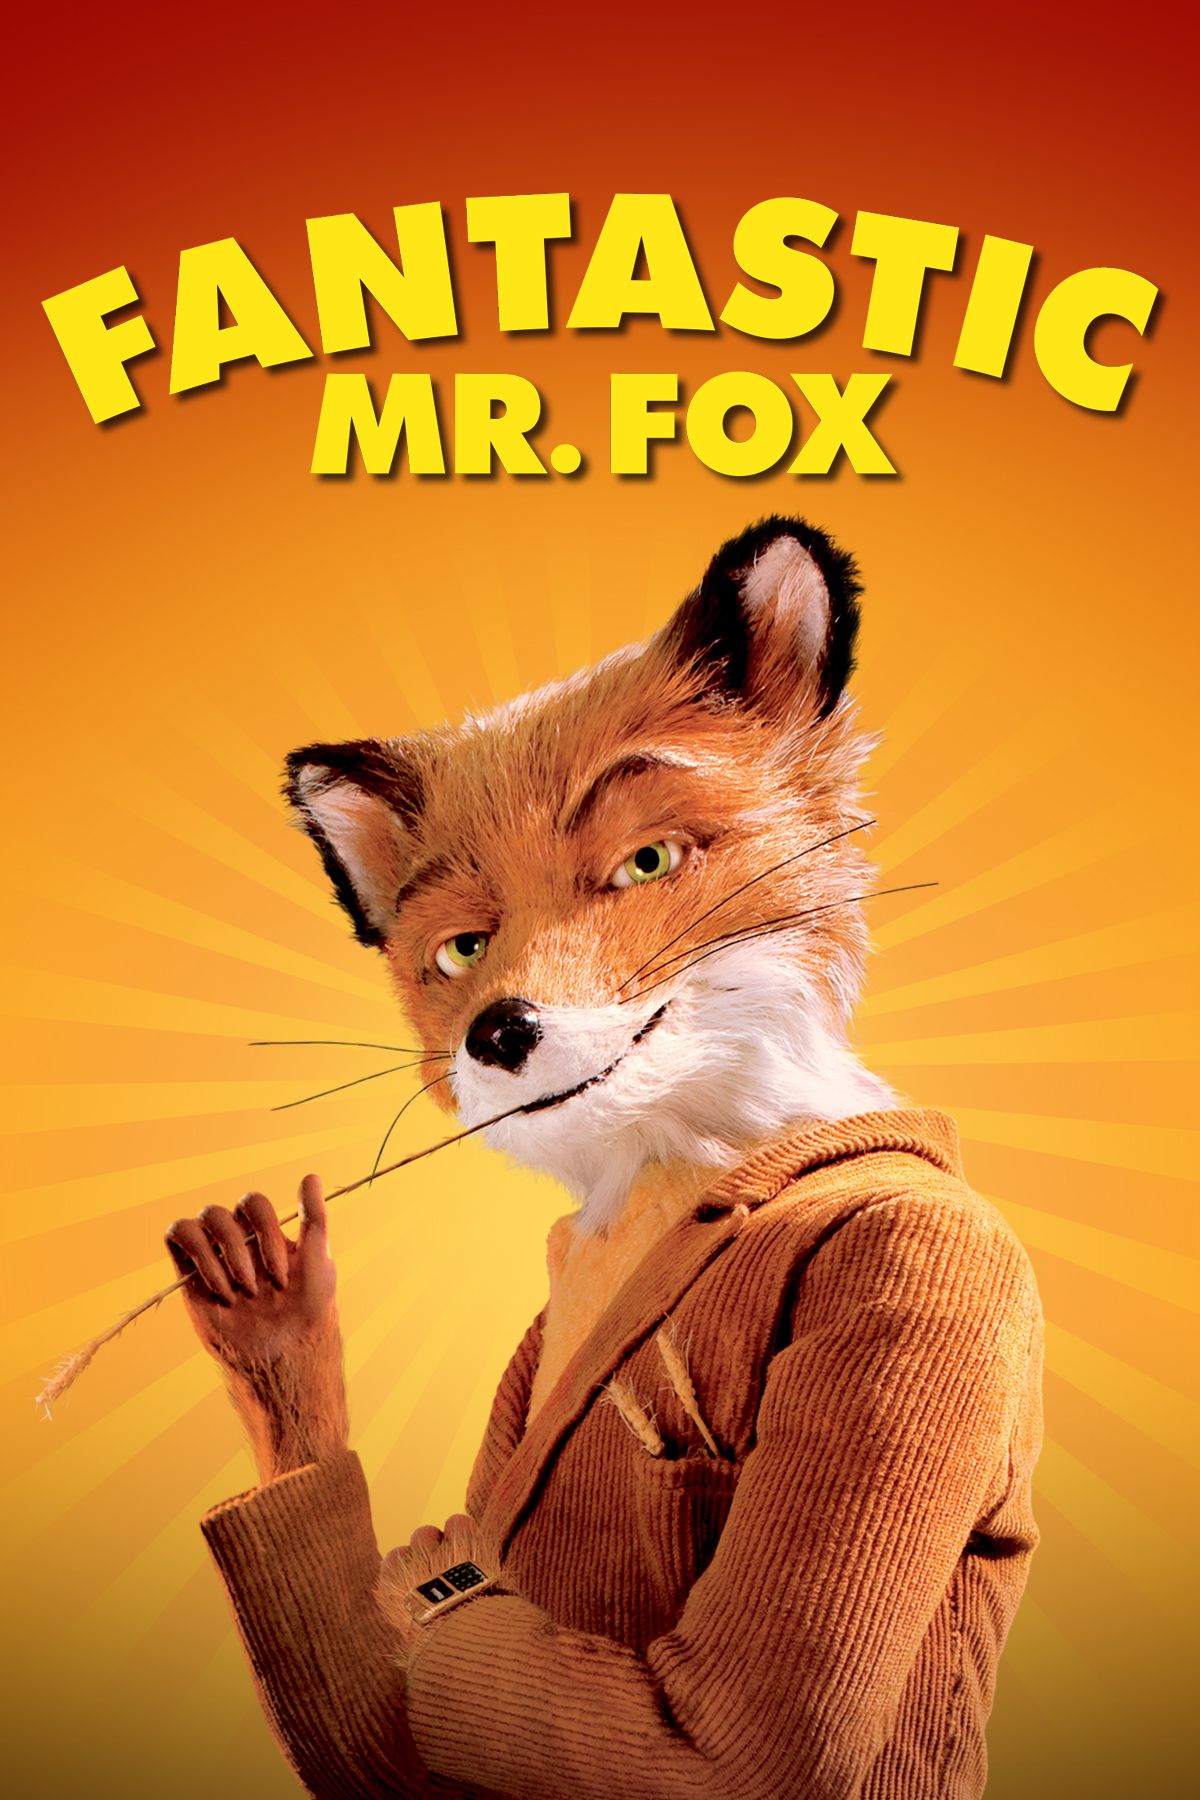 Mr.foxx